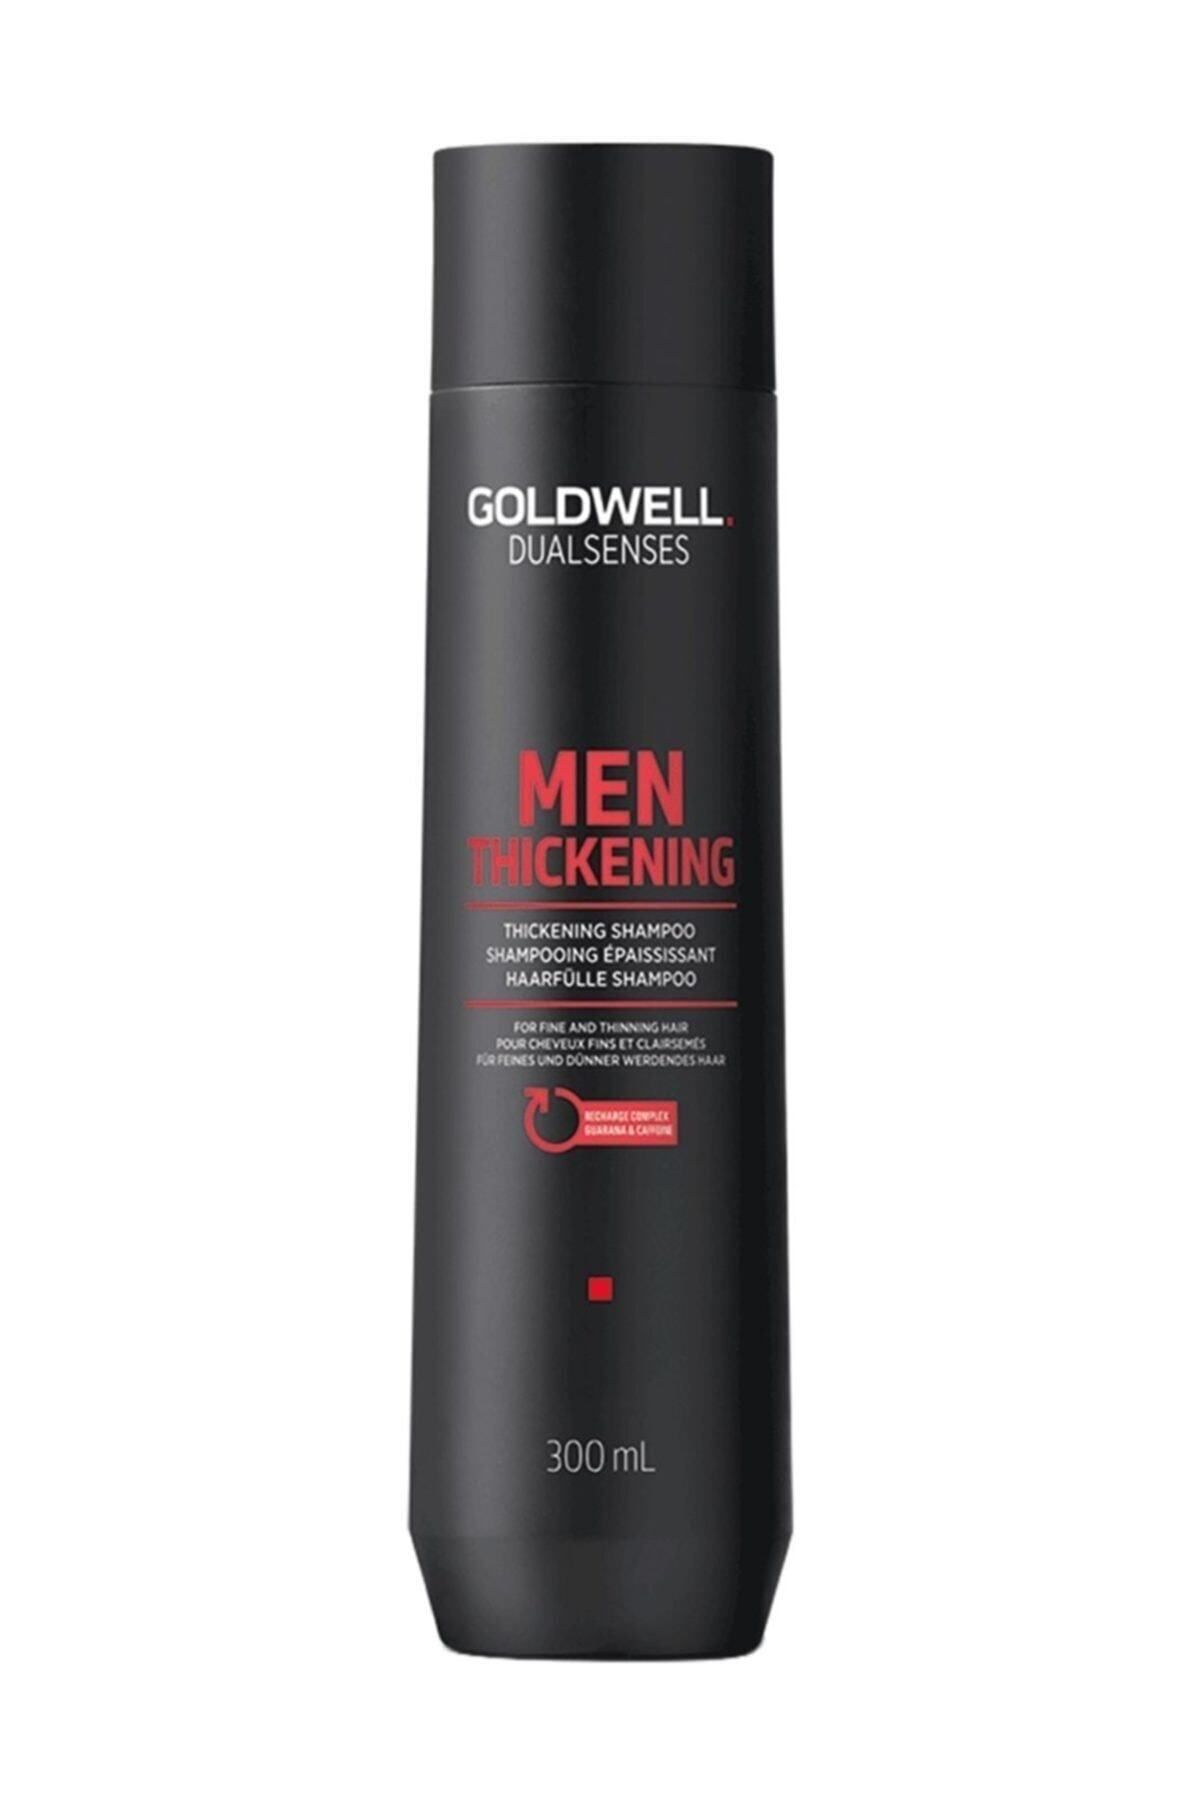 GOLDWELL Dualsenses Men Thickening Erkeklere Özel Dökülme Önleyici Şampuan (300ml)